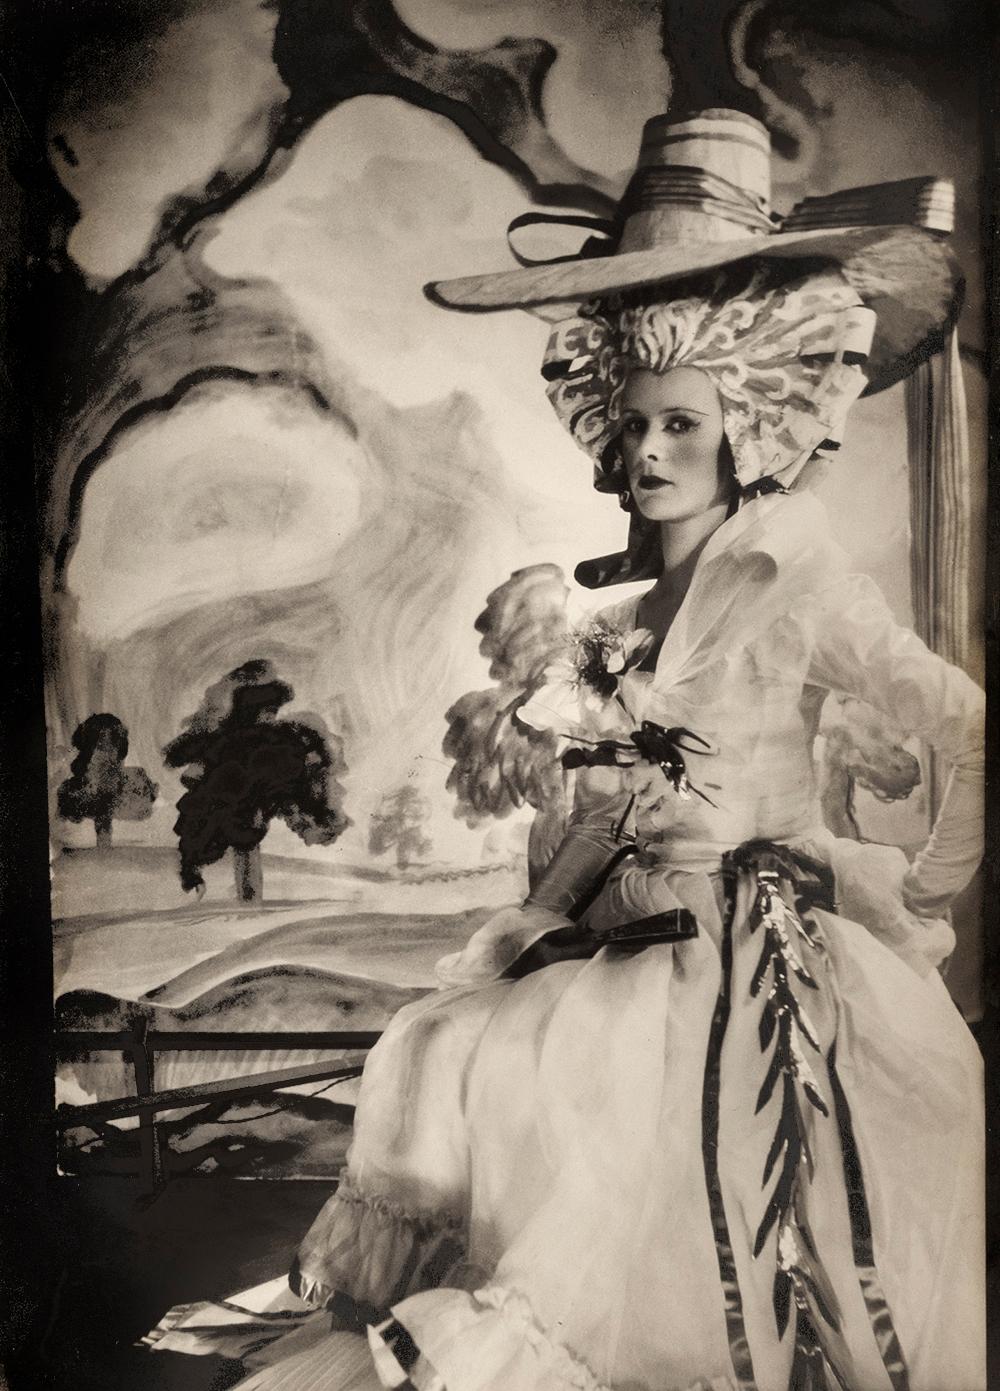 Anne Armstrong-Jones, 1928 - Cecil Beaton (Porträtfotografie)
Von unbekannter Hand mit "Lady Rosse" beschriftet und rückseitig mit dem Tintenstempel des Ateliers von Sotheby's Cecil Beaton versehen
Silbergelatineabzug, später gedruckt
10 1/4 x 7 1/4